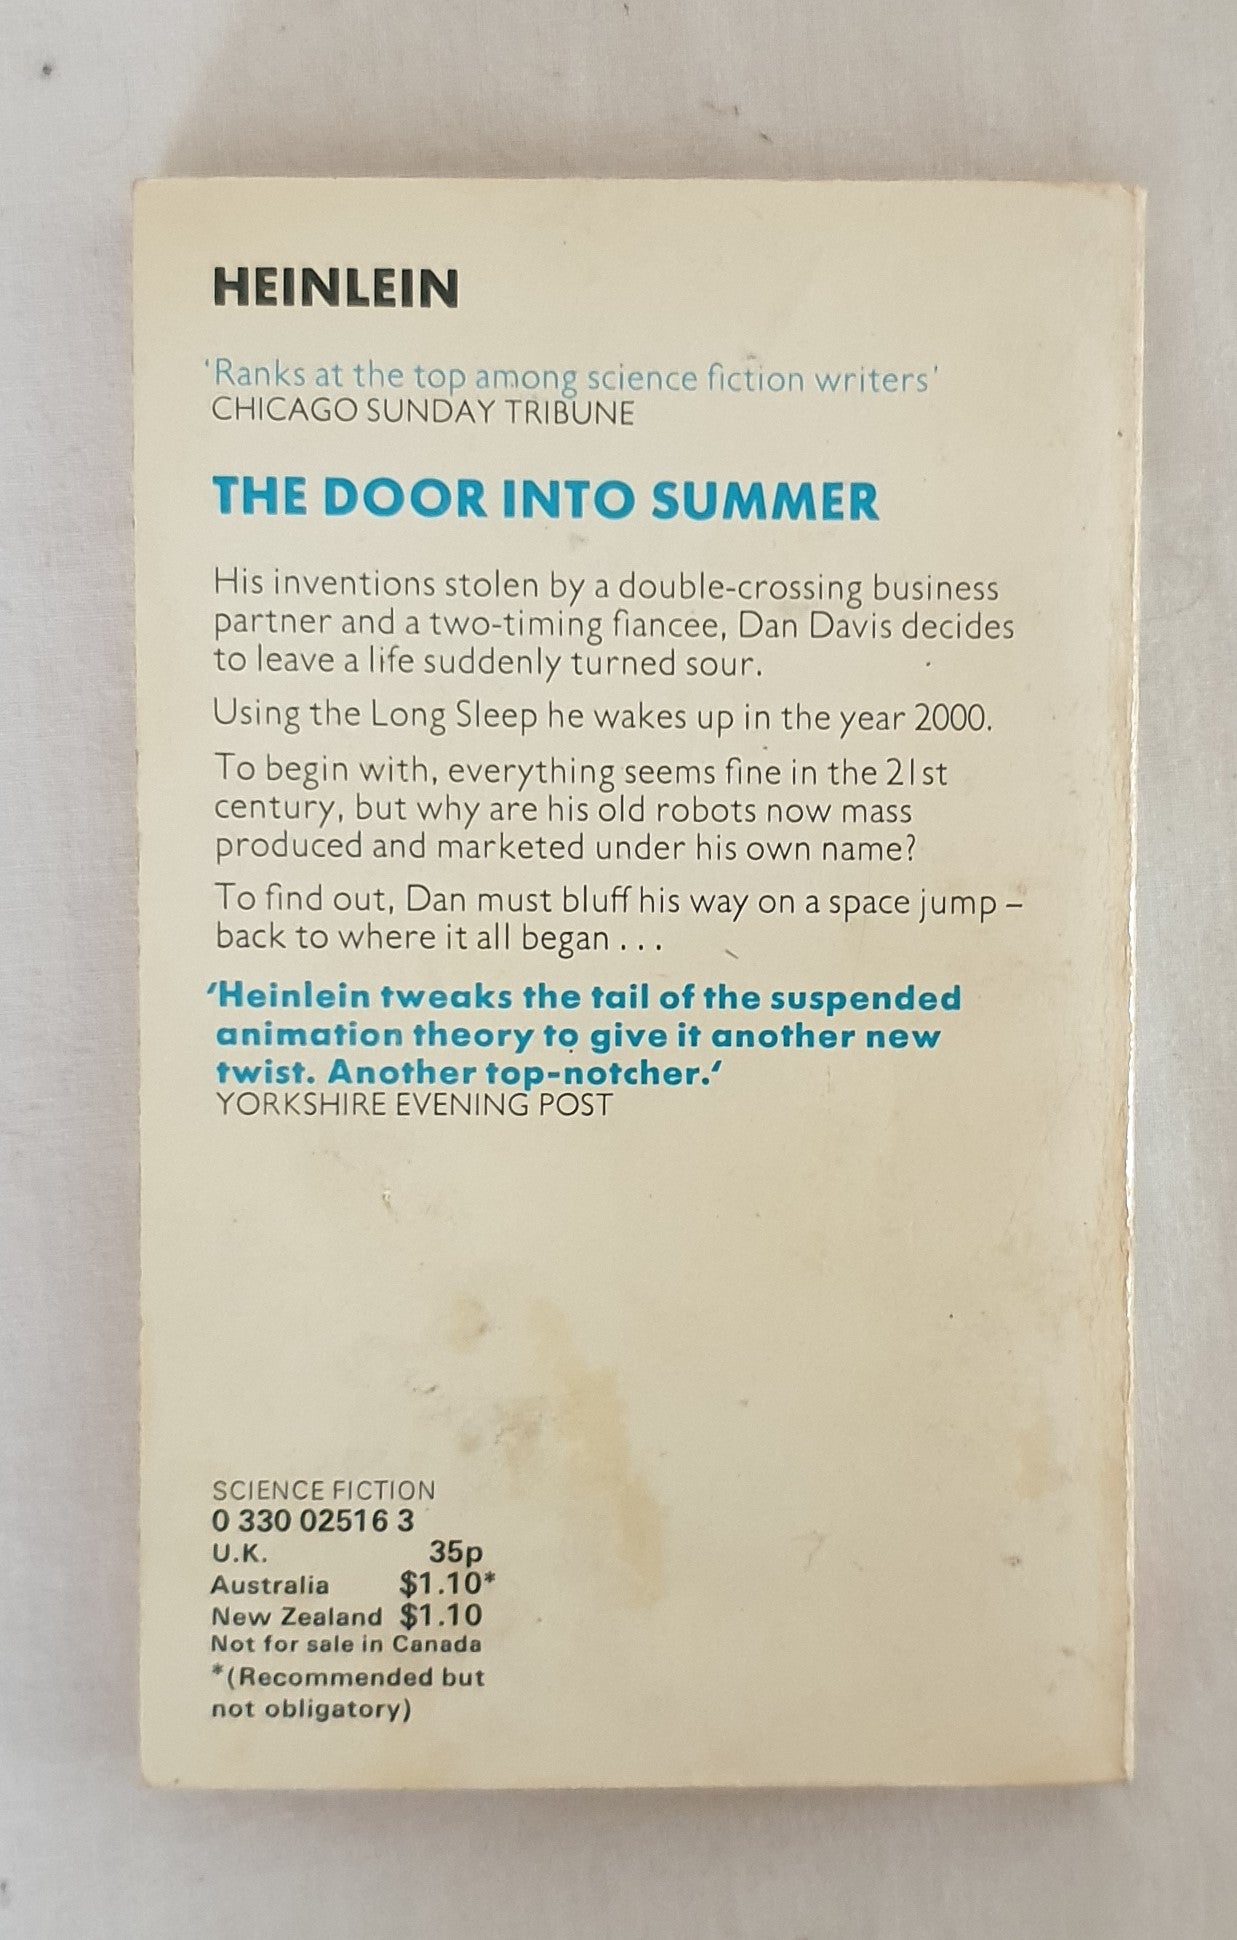 The Door into Summer by Robert Heinlein